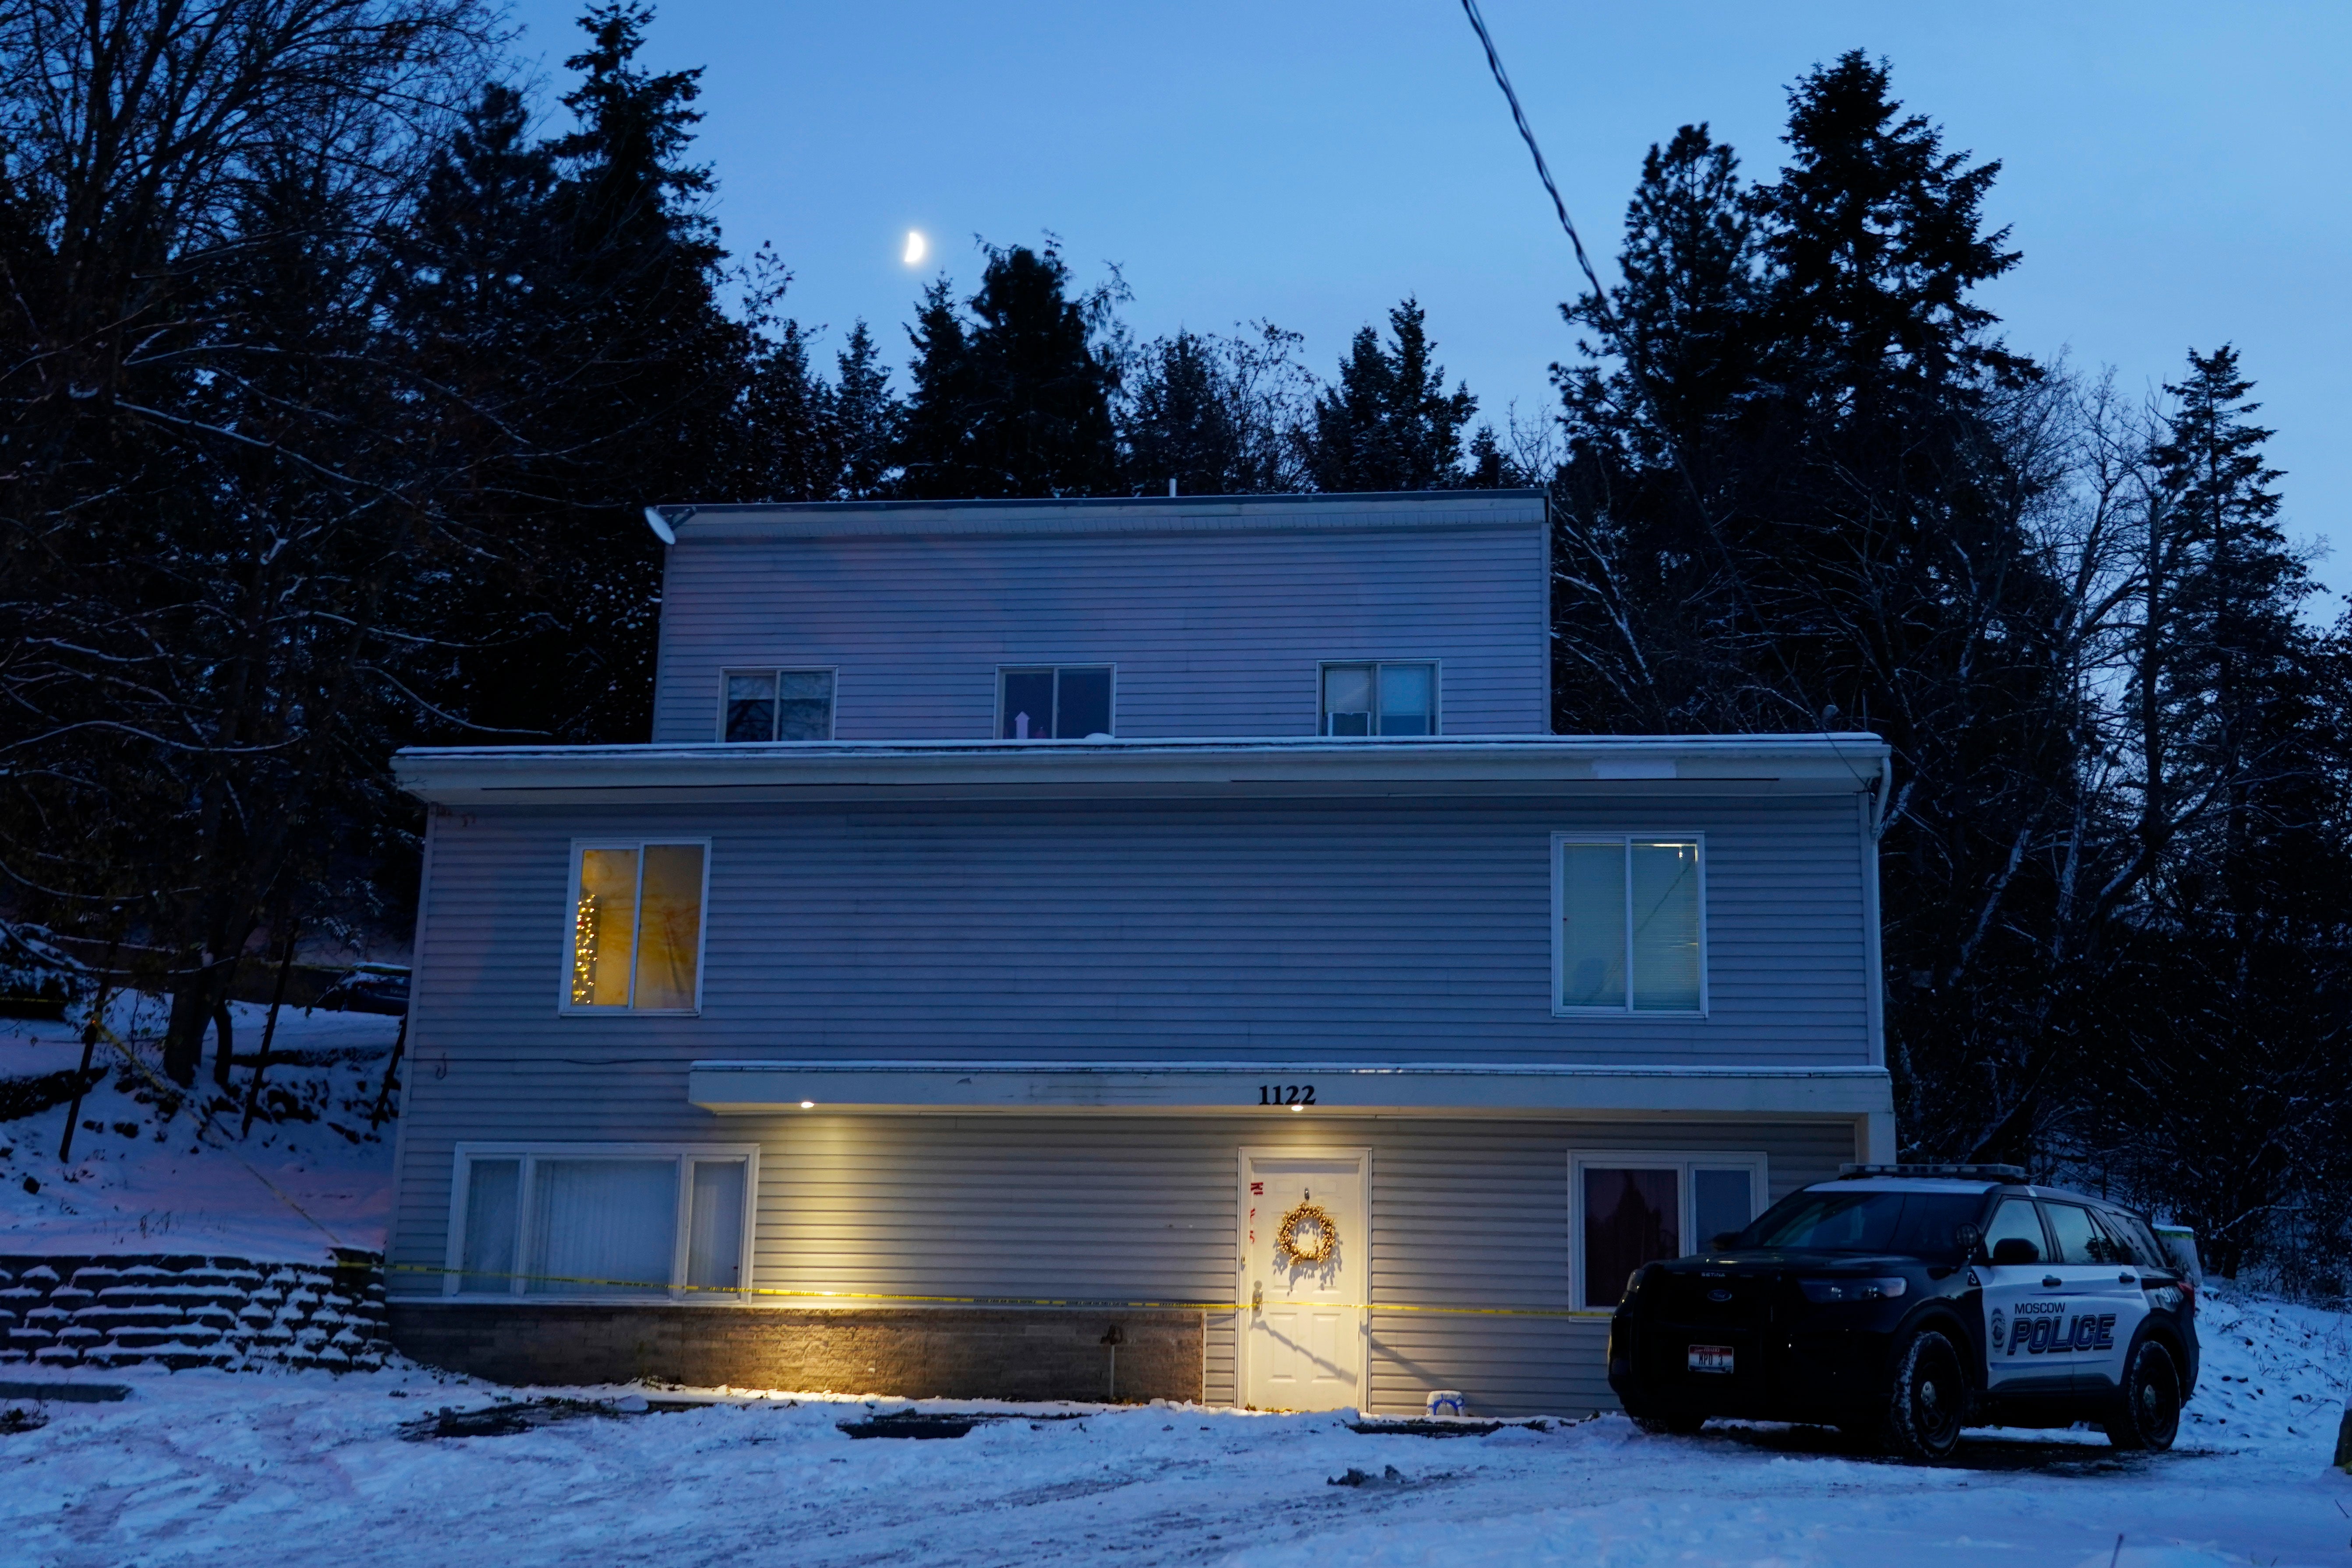 La casa donde cuatro estudiantes fueron asesinados el mes pasado